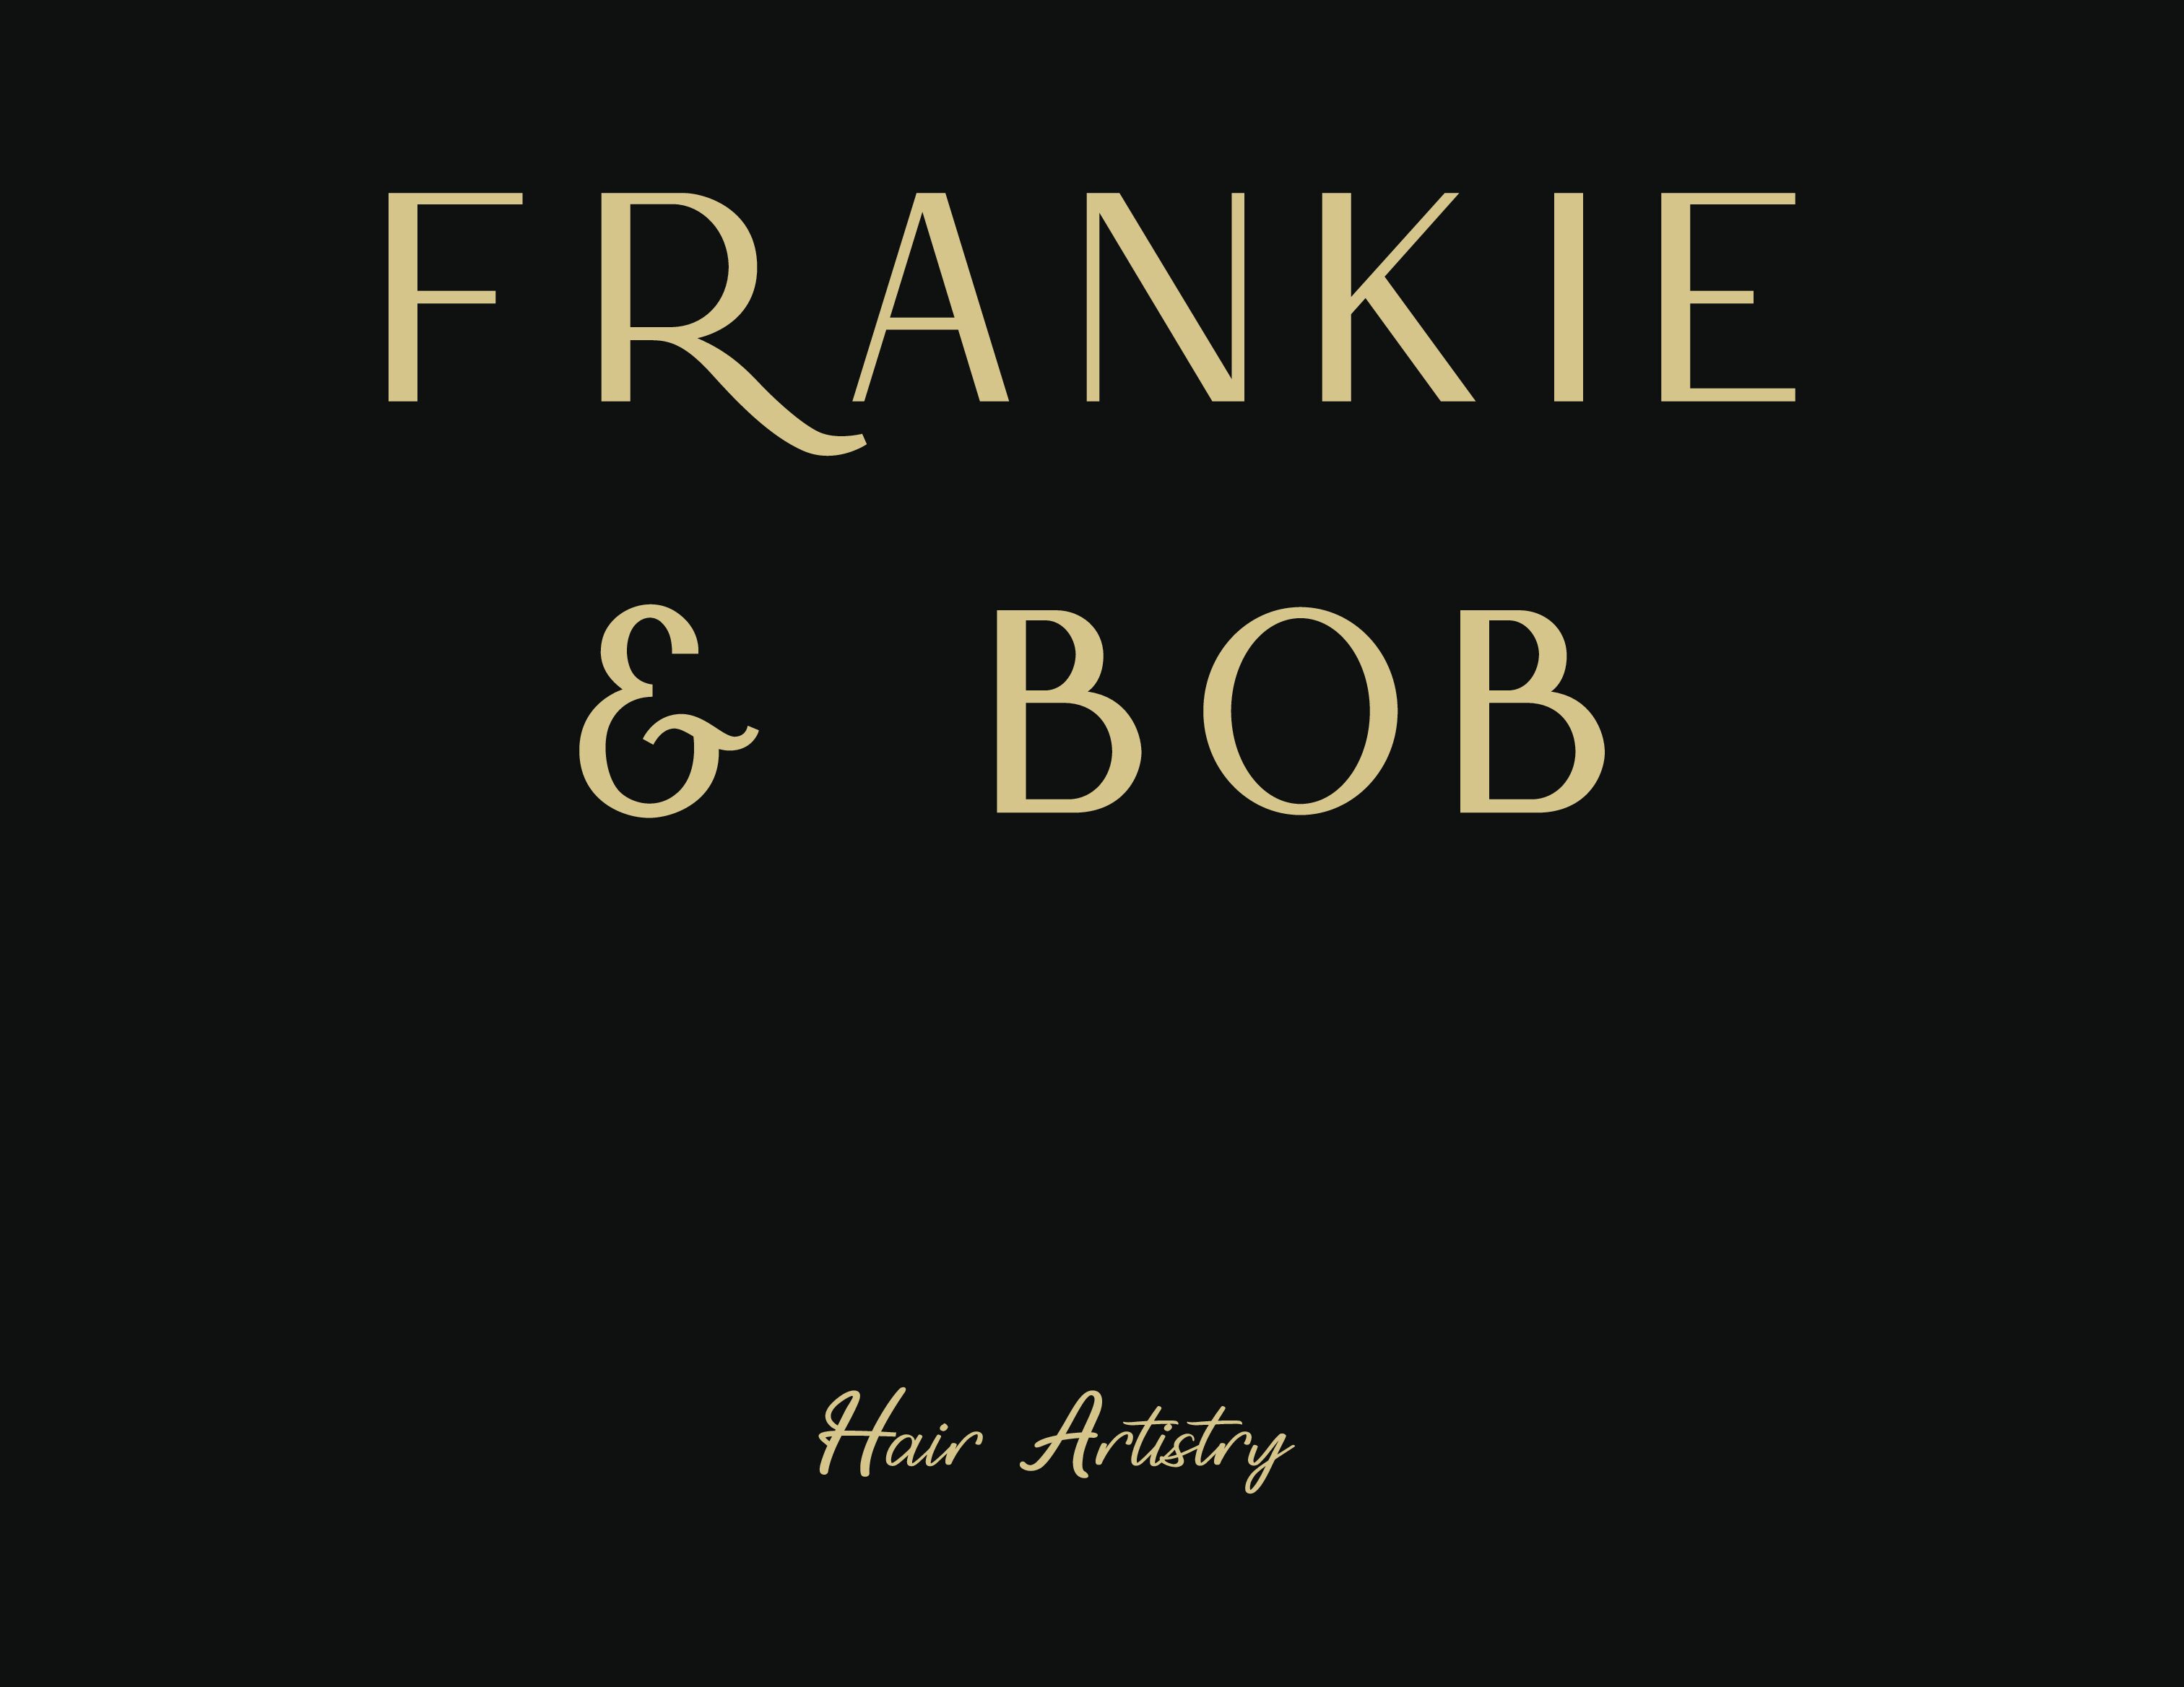 Frankie & Bob